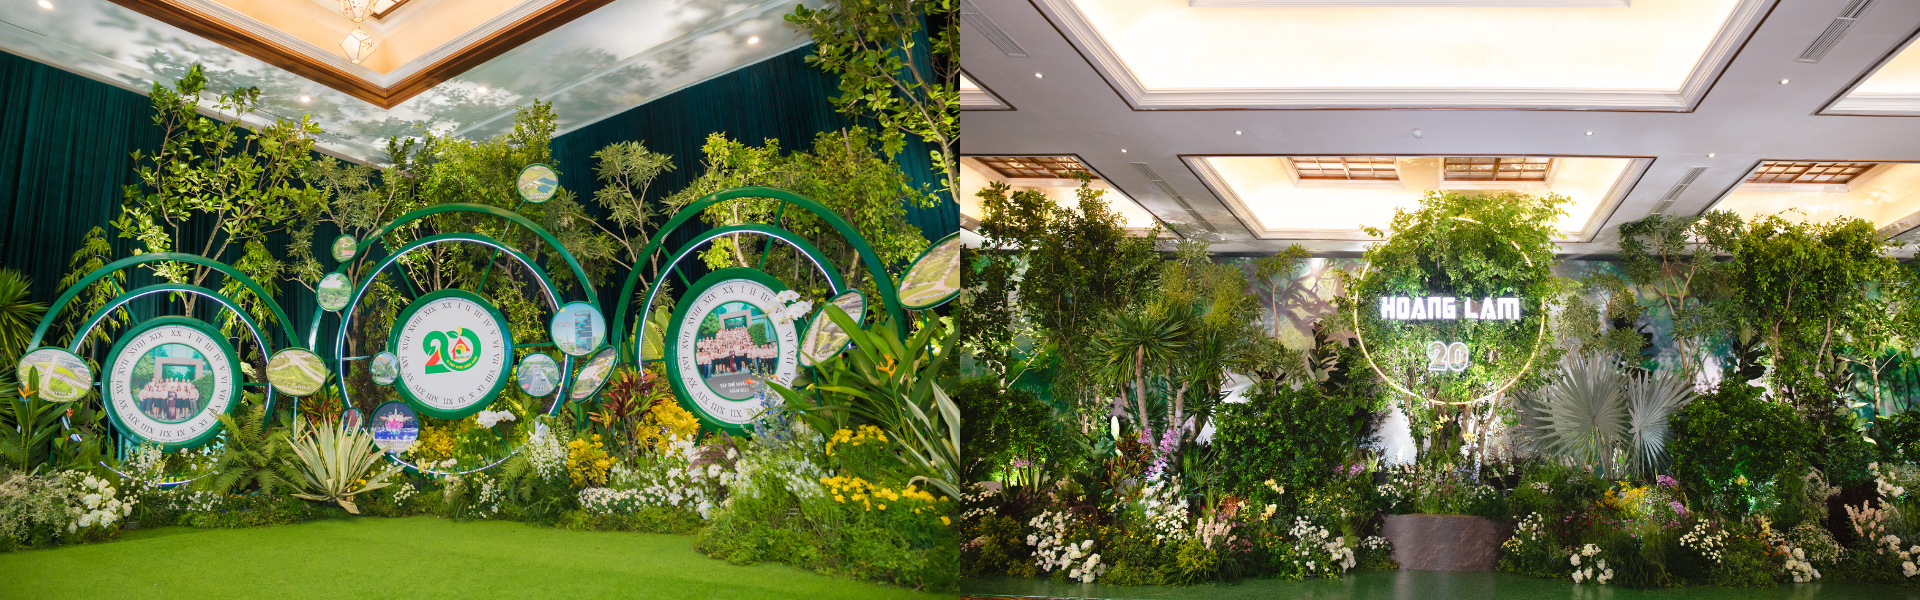 Hãy để Hoàng Lam được cung cấp cây xanh hoa kiểng để tạo ra những không gian sự kiện đặc sắc.